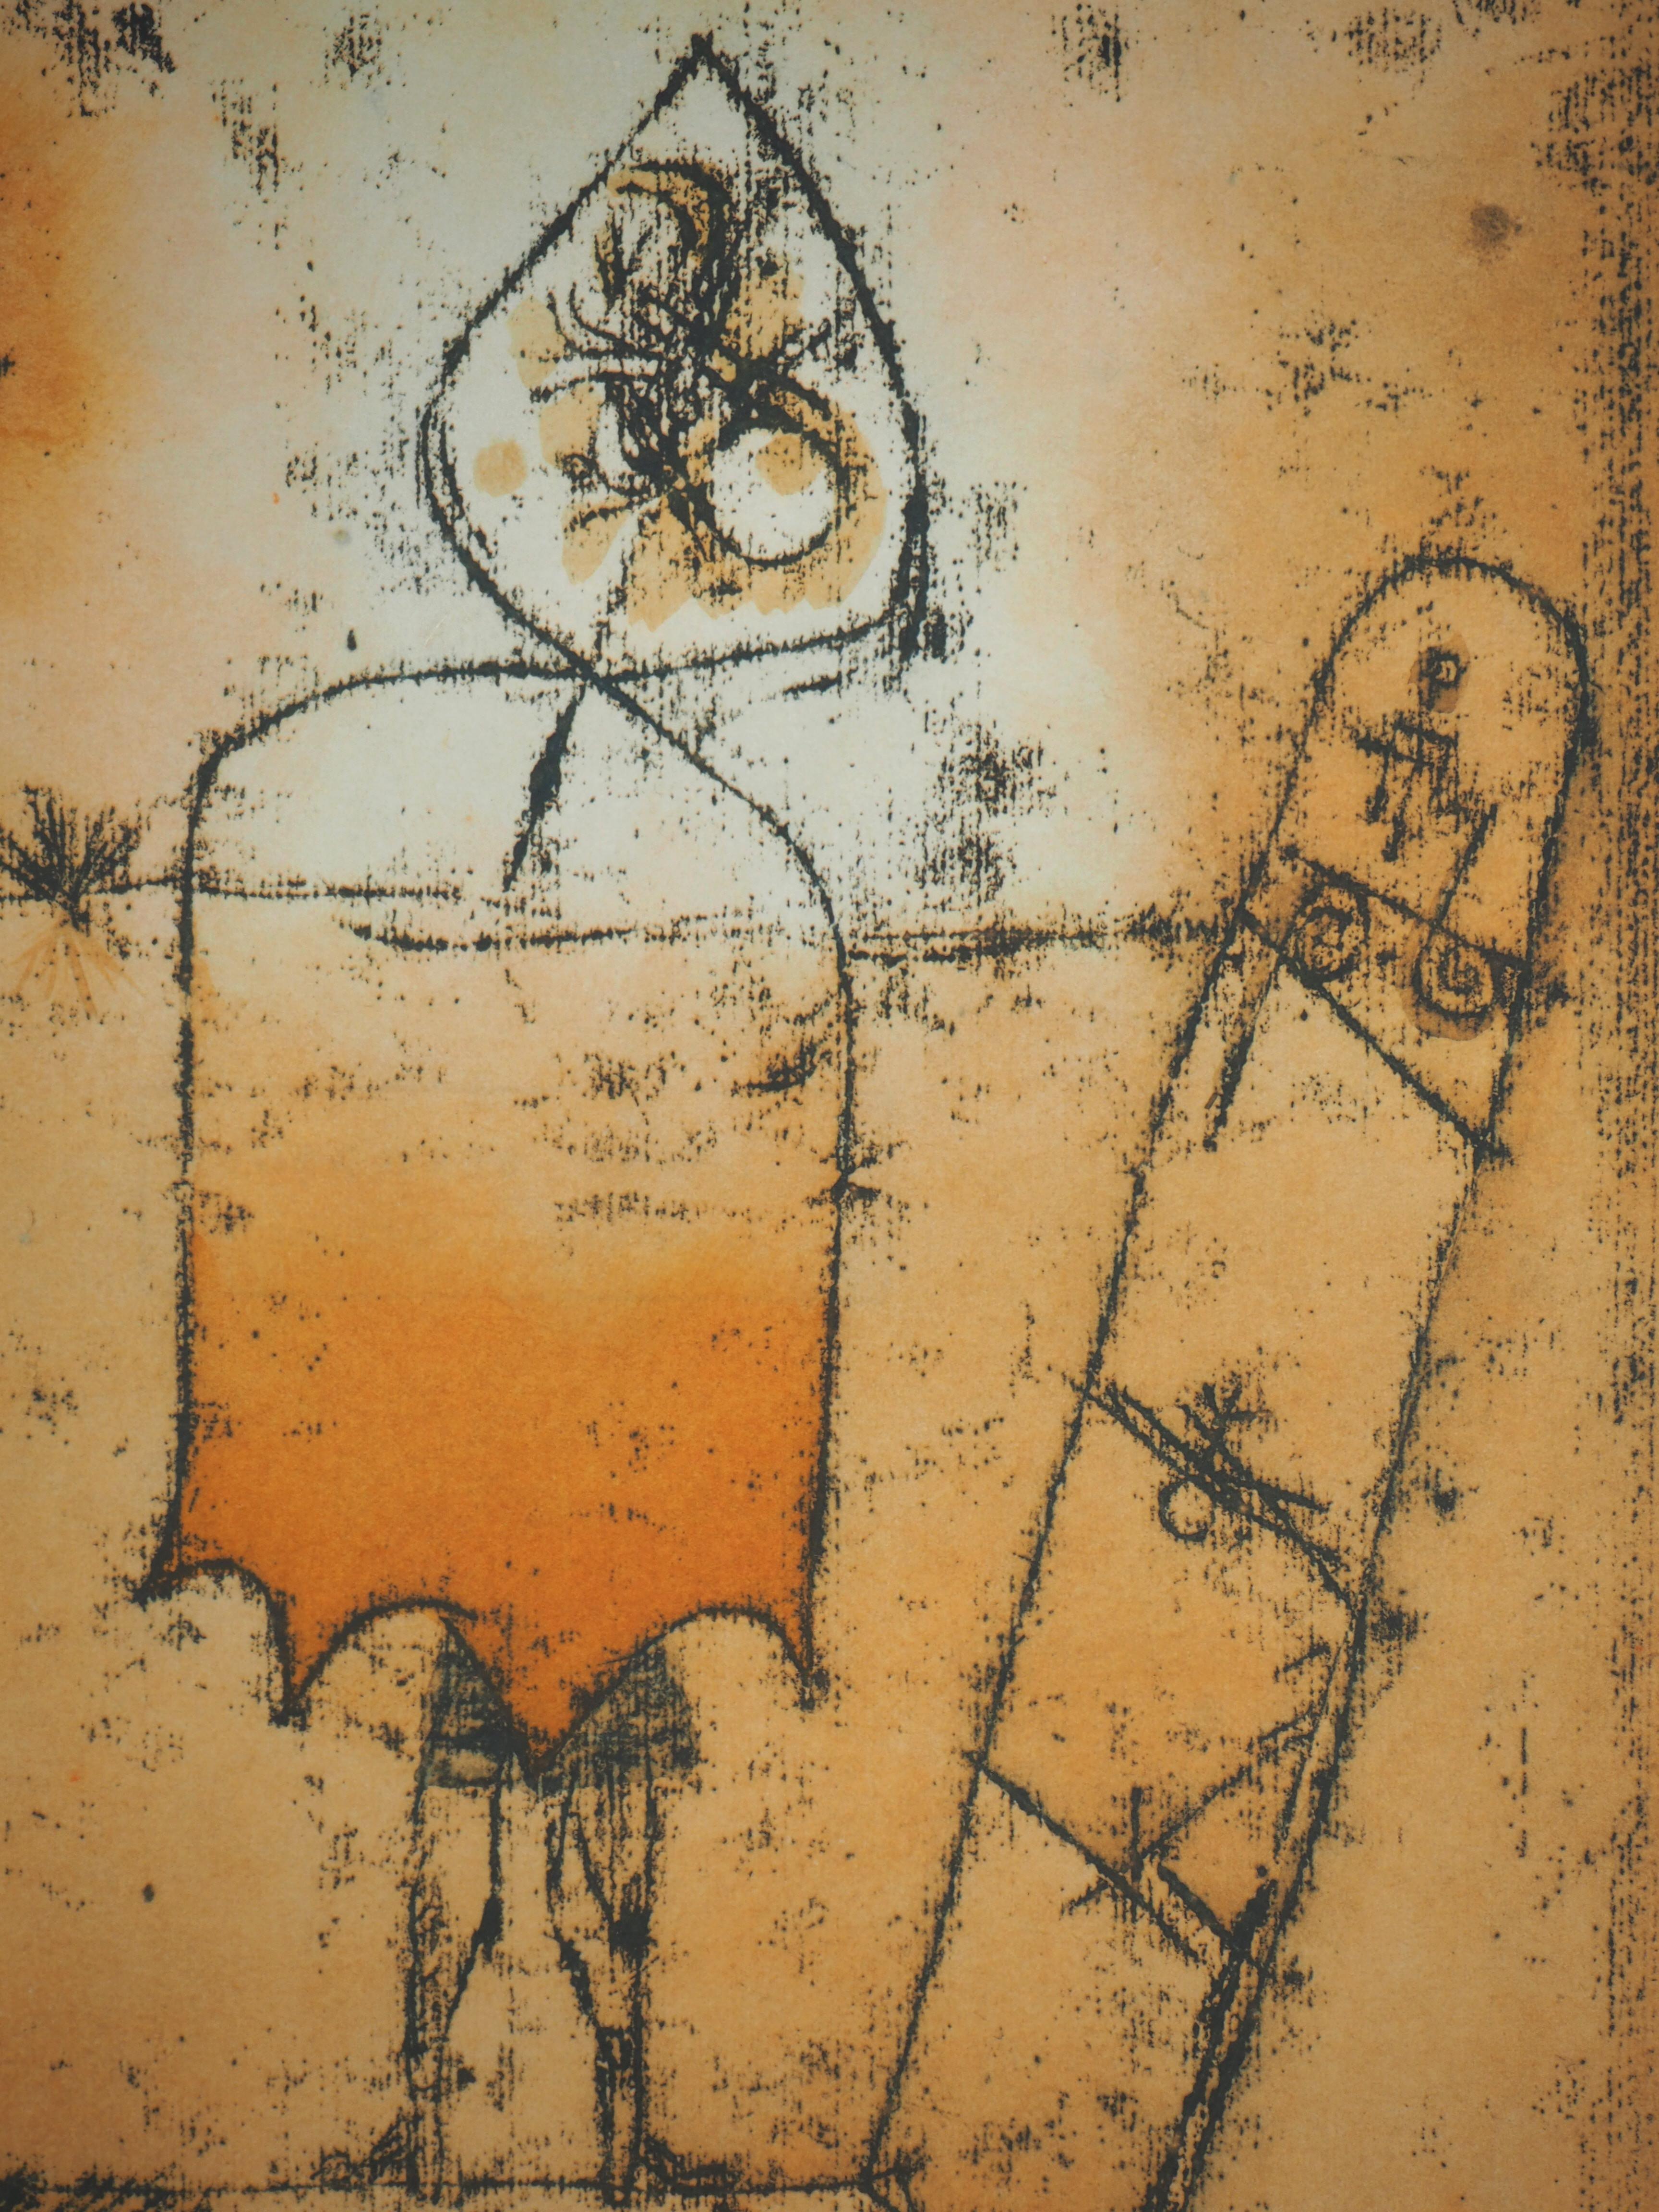 Paul KLEE (après)
L'homme au poirier

Lithographie et pochoir (procédé Jacomet), sur papier canson
Signé dans le tableau
50 x 38,2 cm (19,6 x 14,9 in)

INFORMATION : Cette lithographie a été éditée en 1964 par la Galerie Berggruen en collaboration